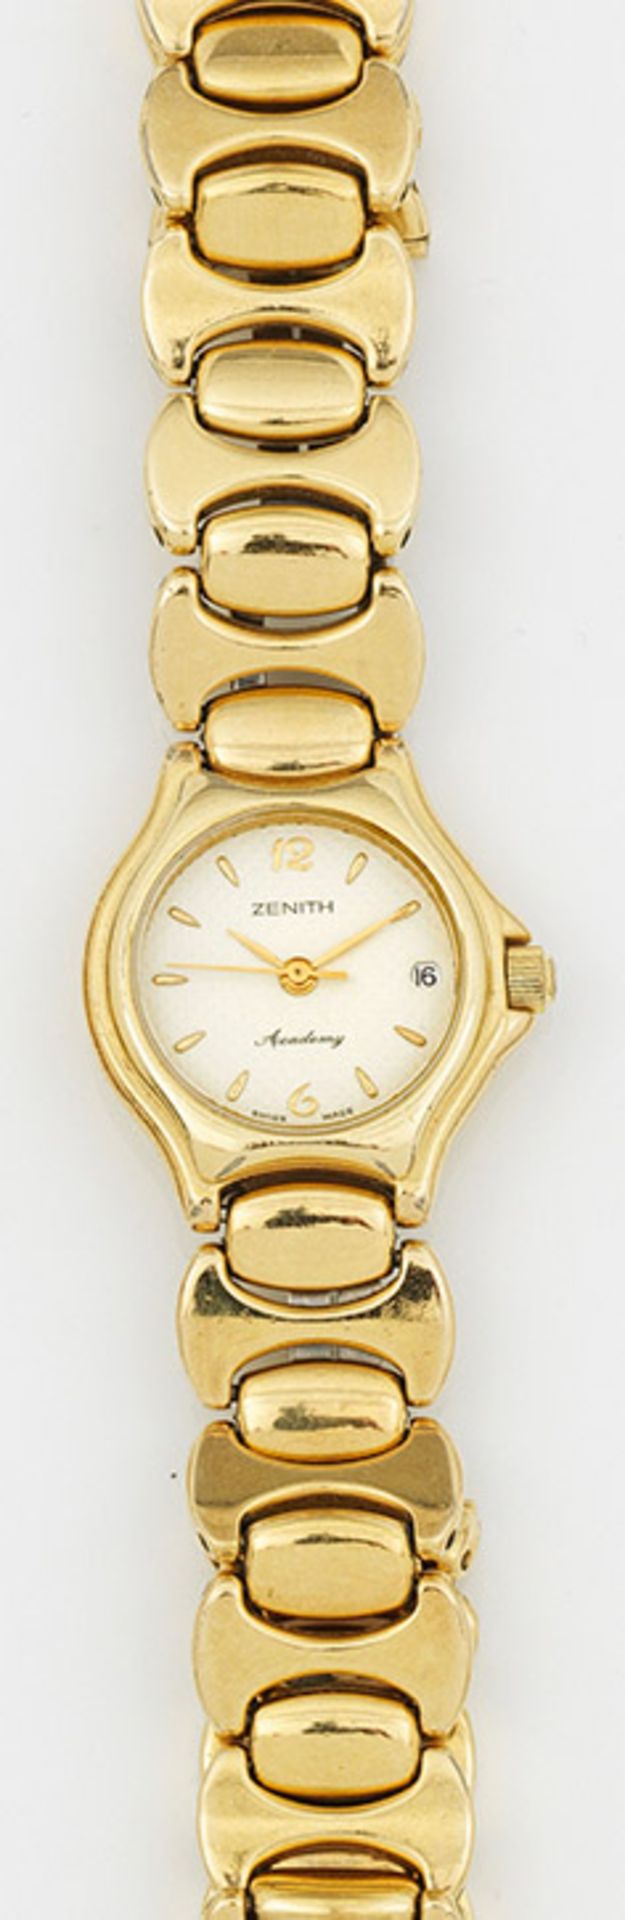 Damenarmbanduhr von ZenithVergoldet. Rundes Uhrengehäuse mit cremefarbenem Zifferblatt, Indexen